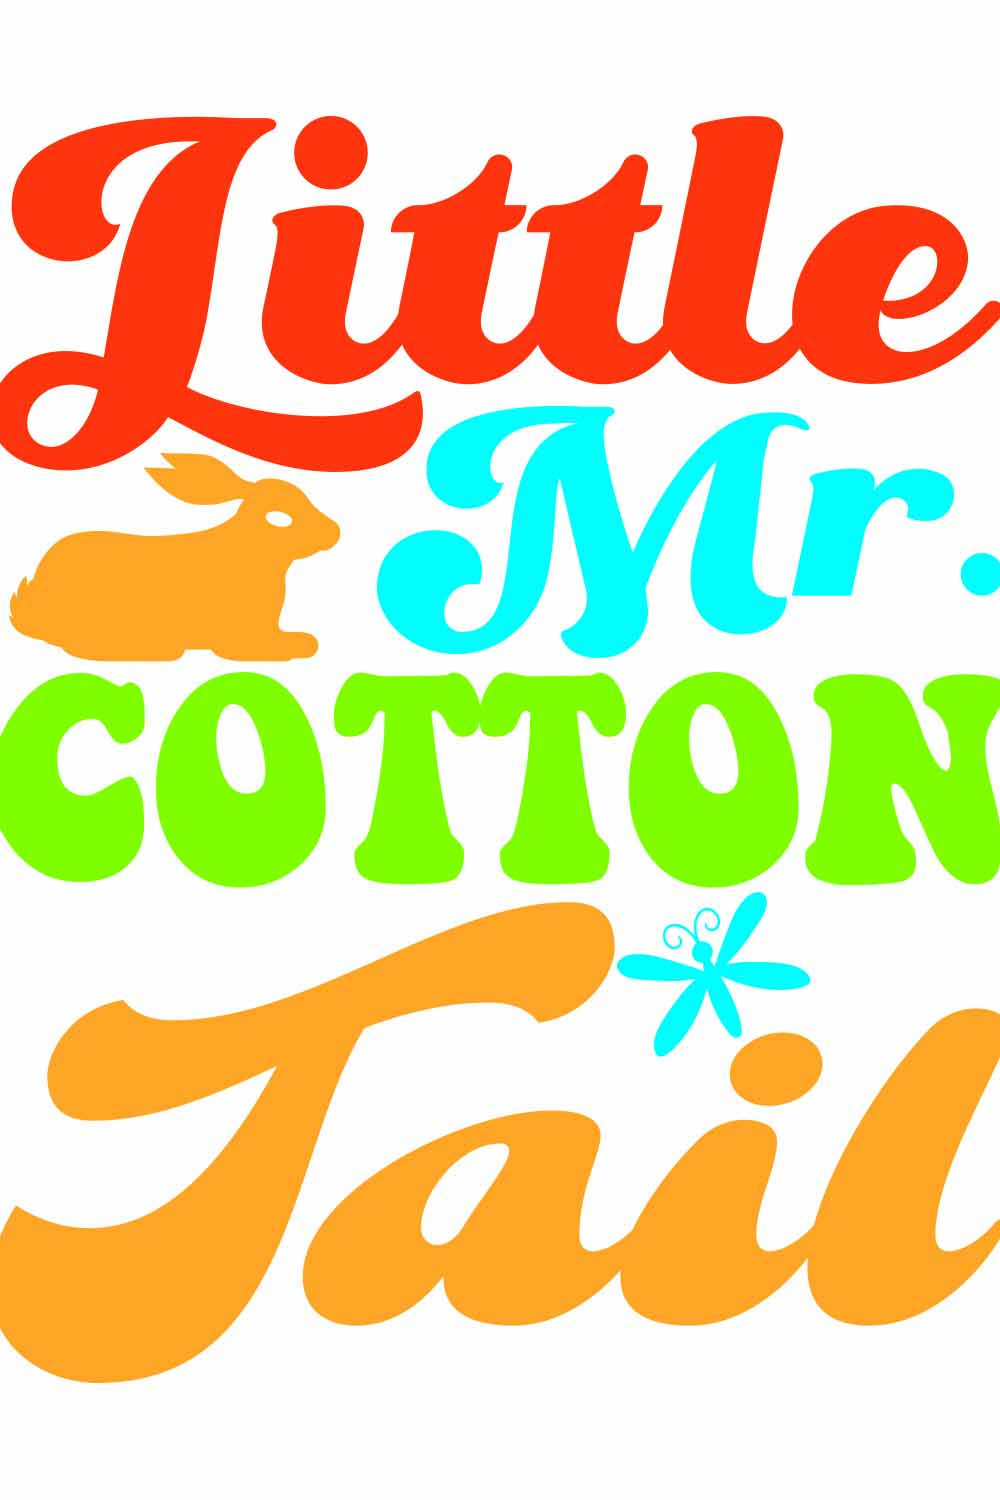 Little Miss Cotton Tail Retro T-Shirt Designs pinterest preview image.